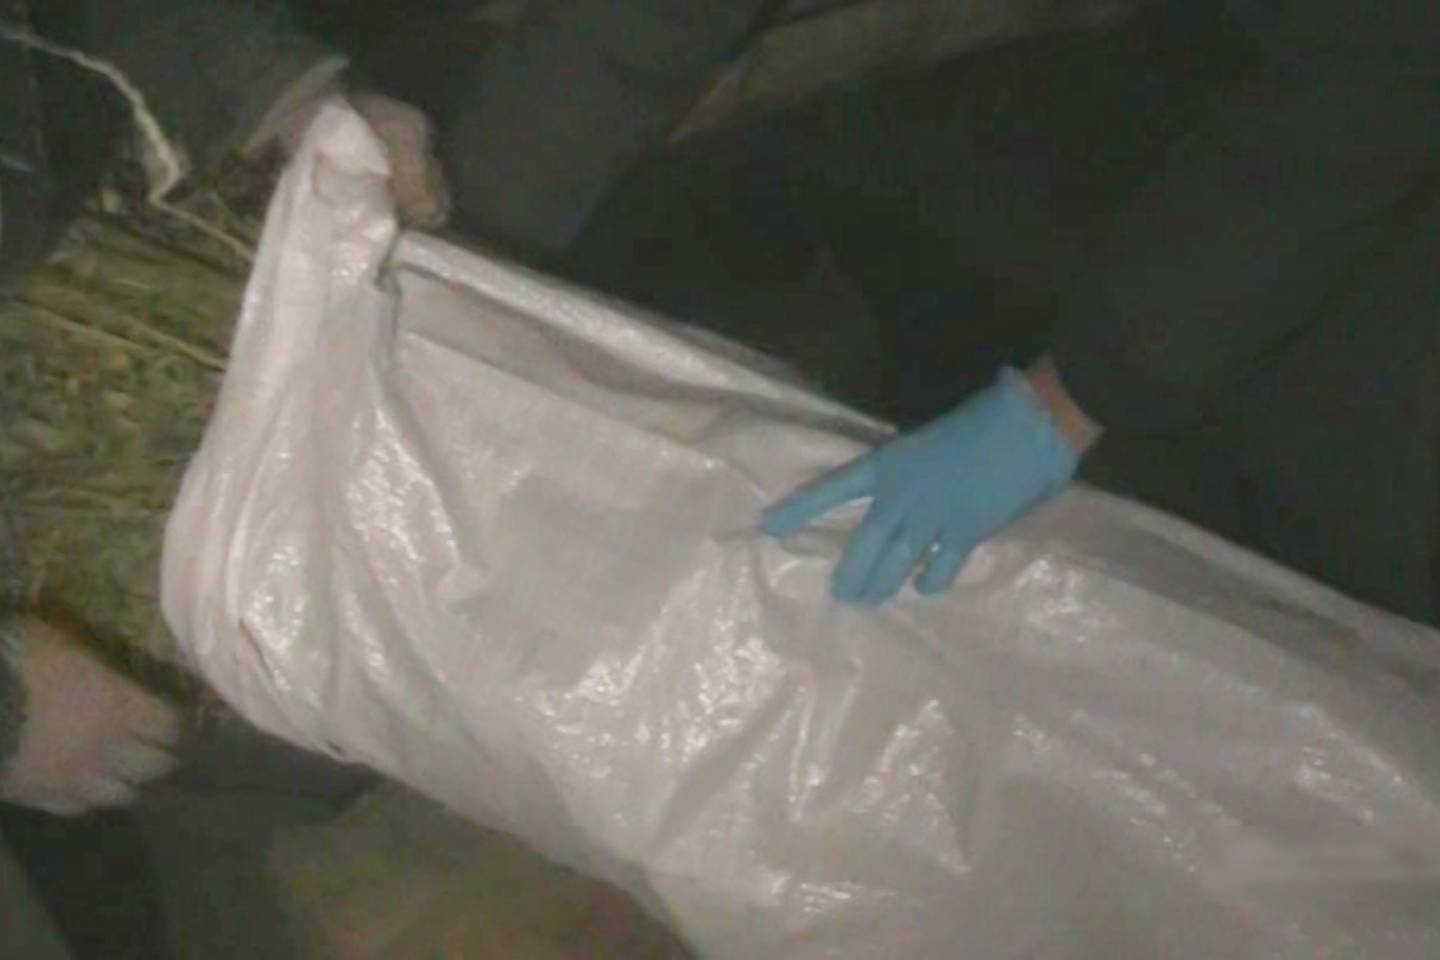 Усть-Каменогорск и ВКО / Полицейские нашли в доме у жителя ВКО более 10 кг наркотиков